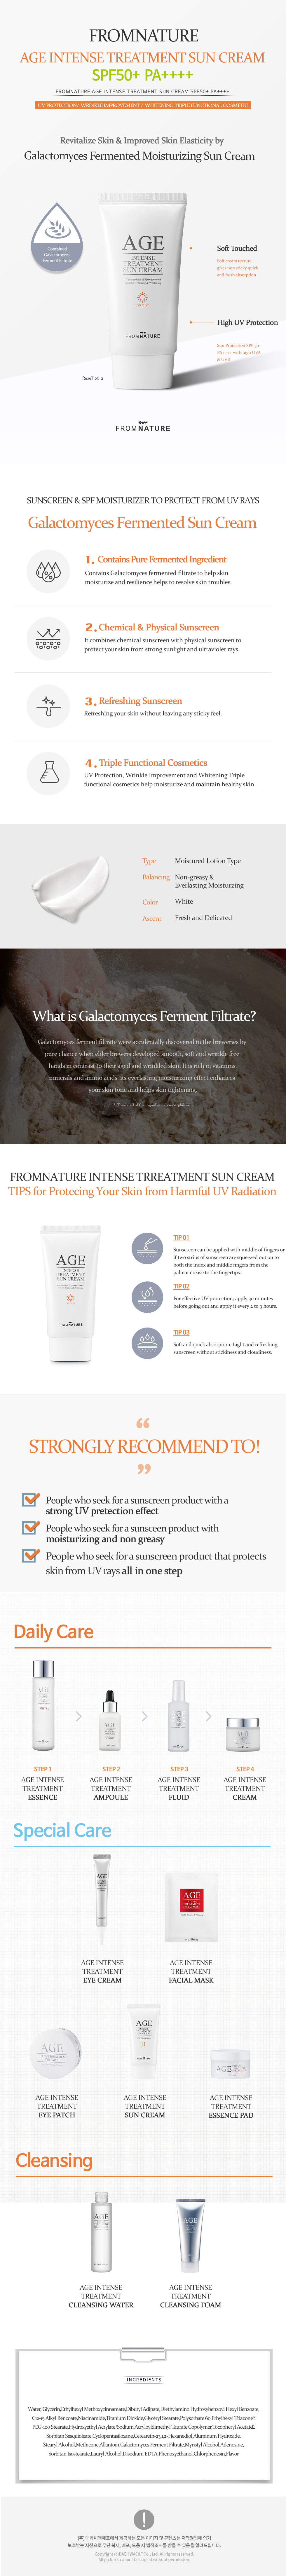 Age Intense Treatment Sun Cream SPF50+ PA++++